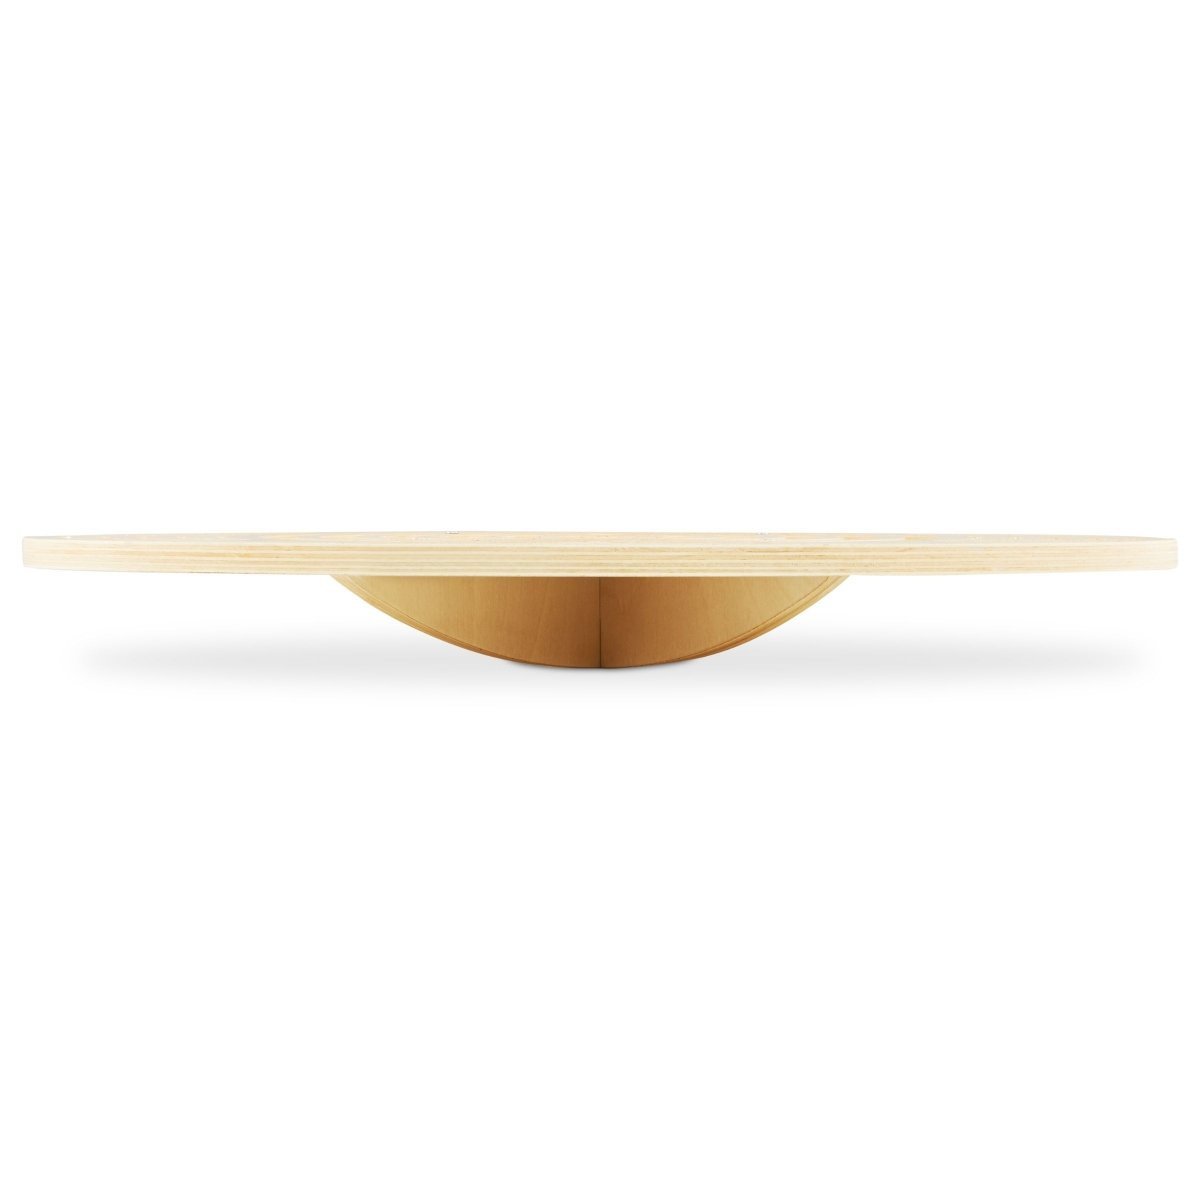 Drewniana deska do balansowania z labiryntem i kulkami - bujak balansowy